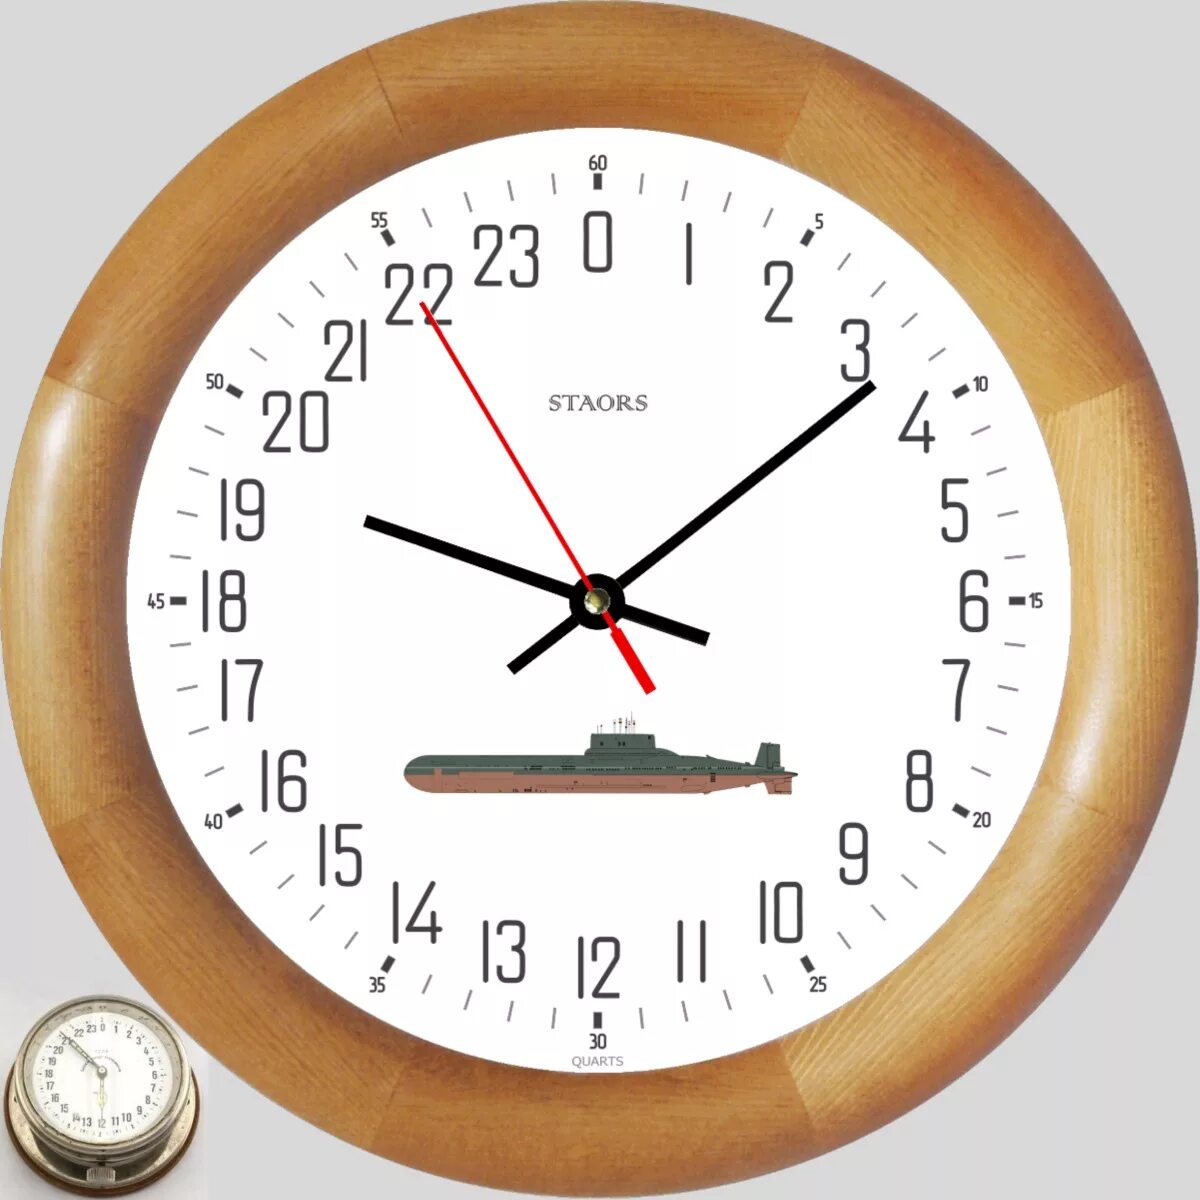 24 1 3 купить. Часы корабельные, судовые с 24-х часовым циферблатом. Судовые часы с циферблатом на 24 часа. 24 Циферблатные часы. Корабельные часы 24 часа.